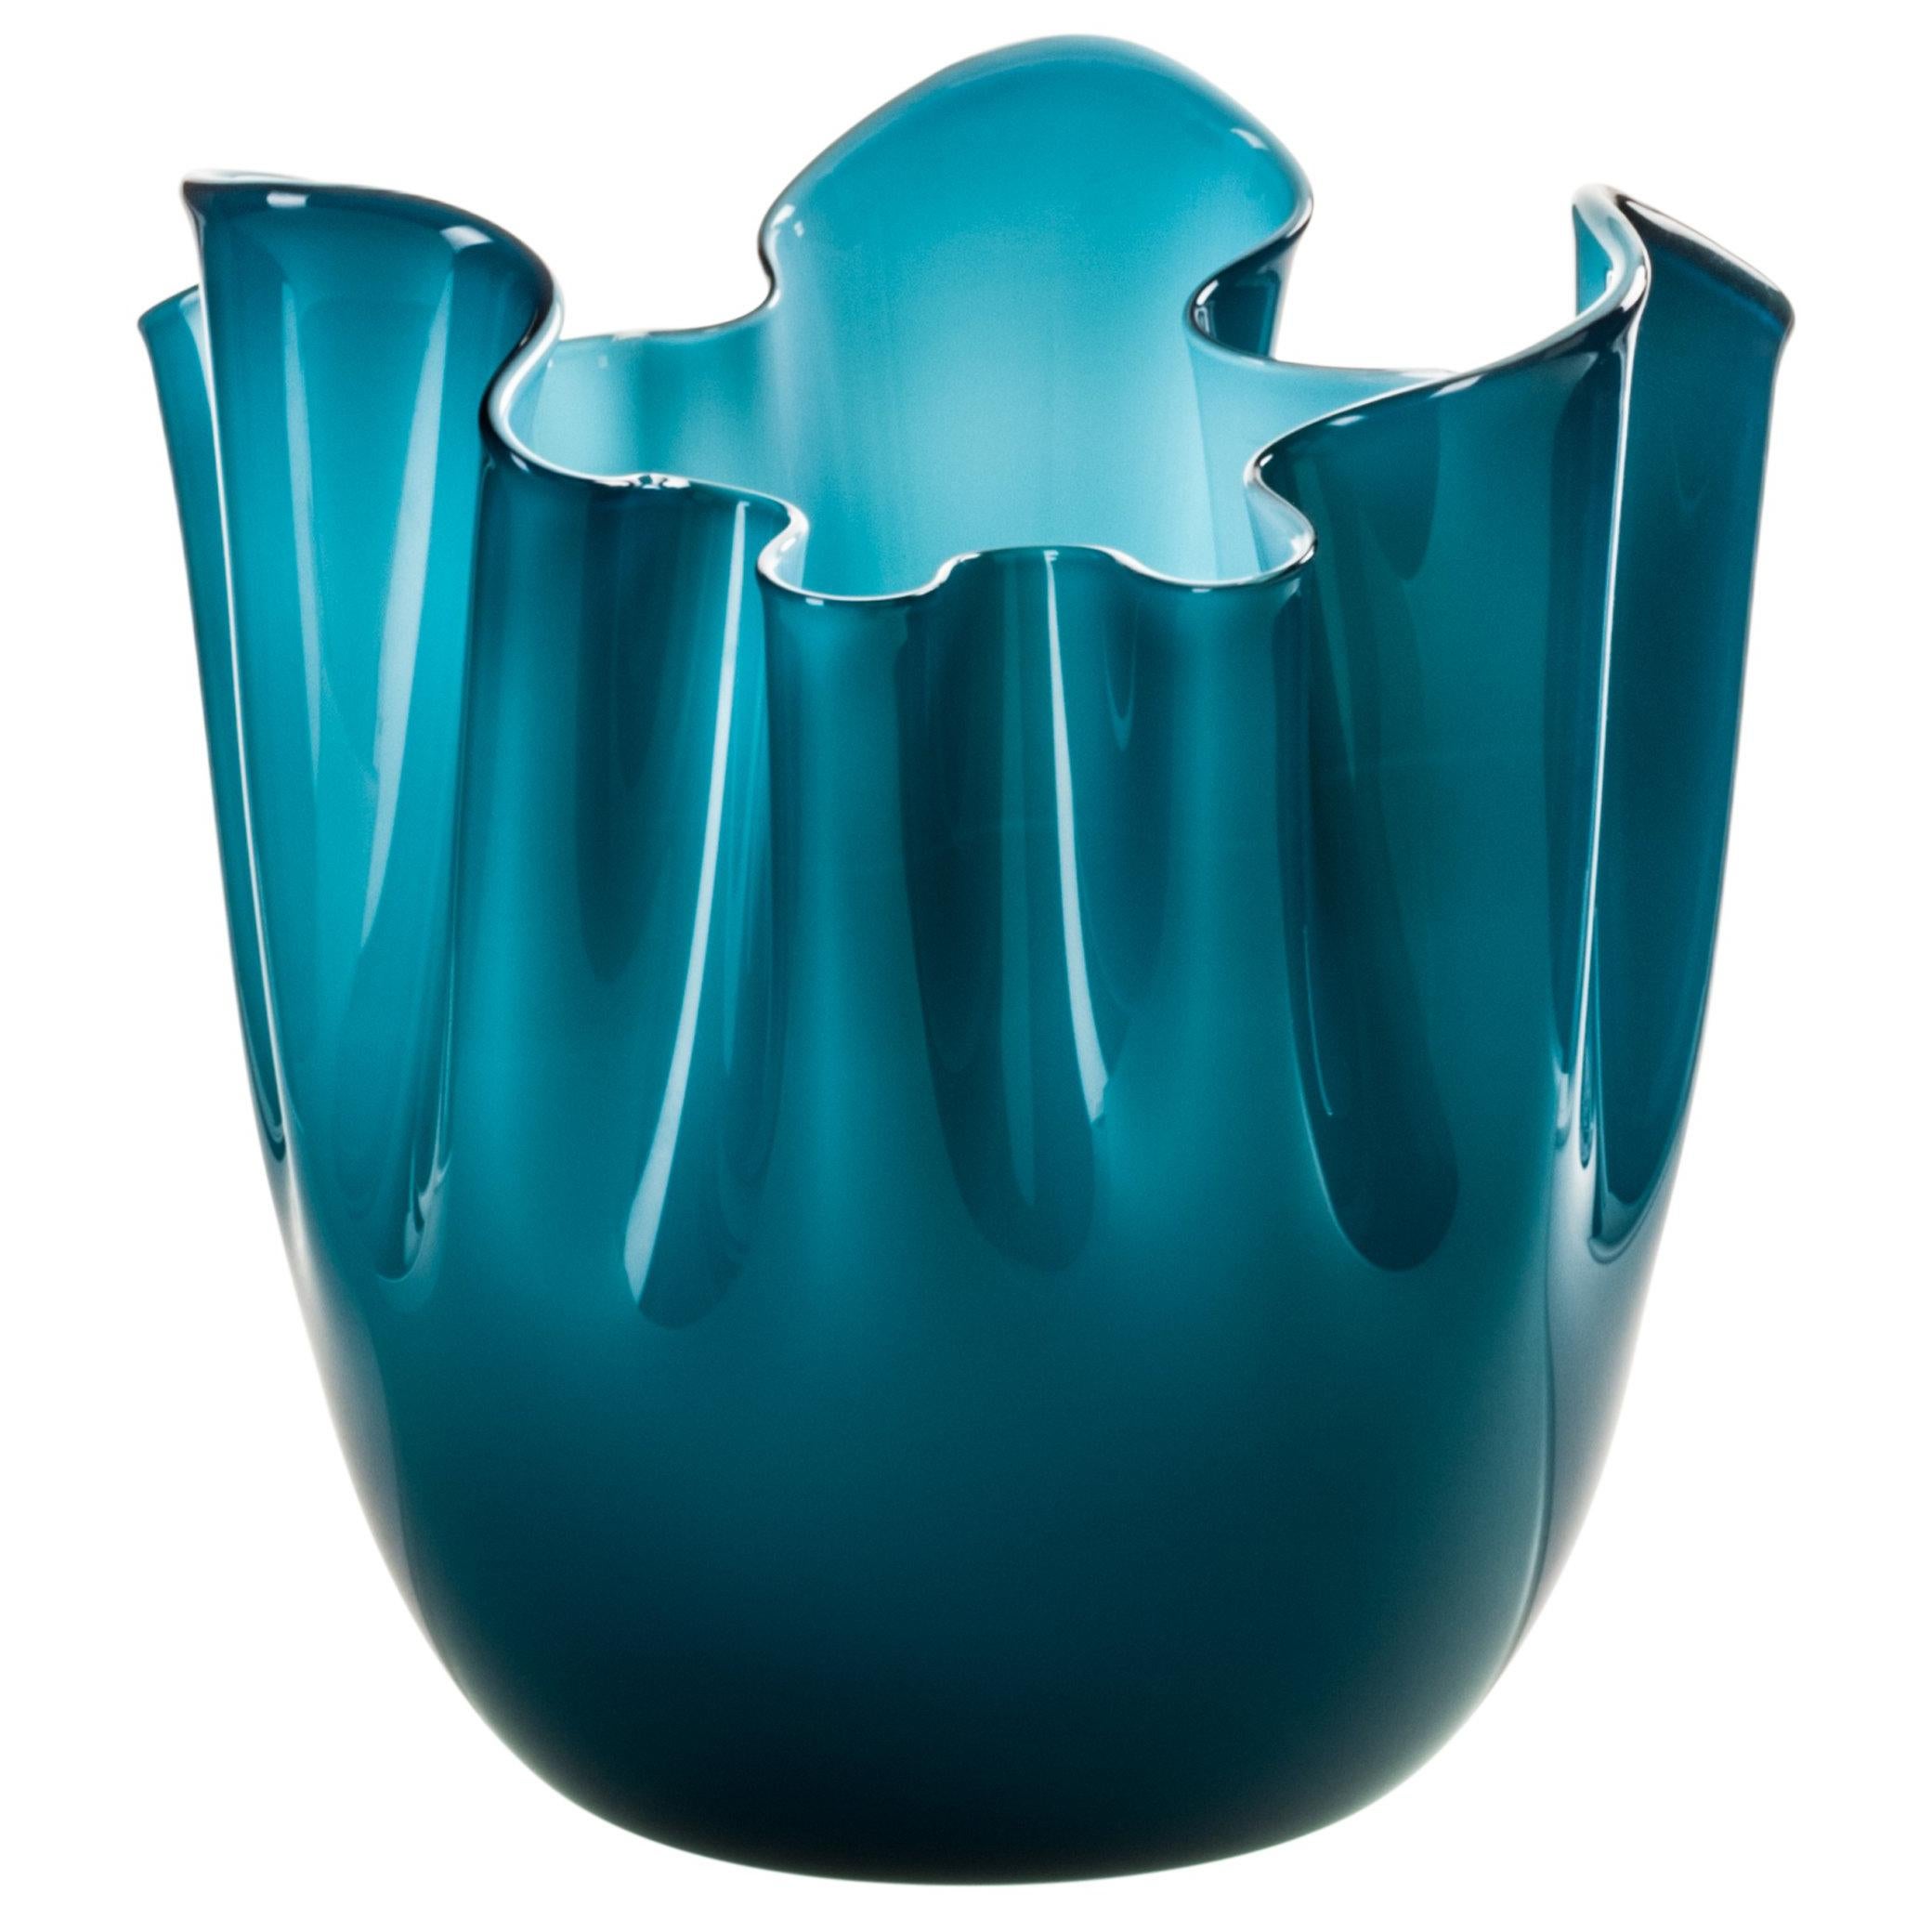 Fazzoletto Glass Vase in Aquamarine by Fulvio Bianconi & Paolo Venini For Sale